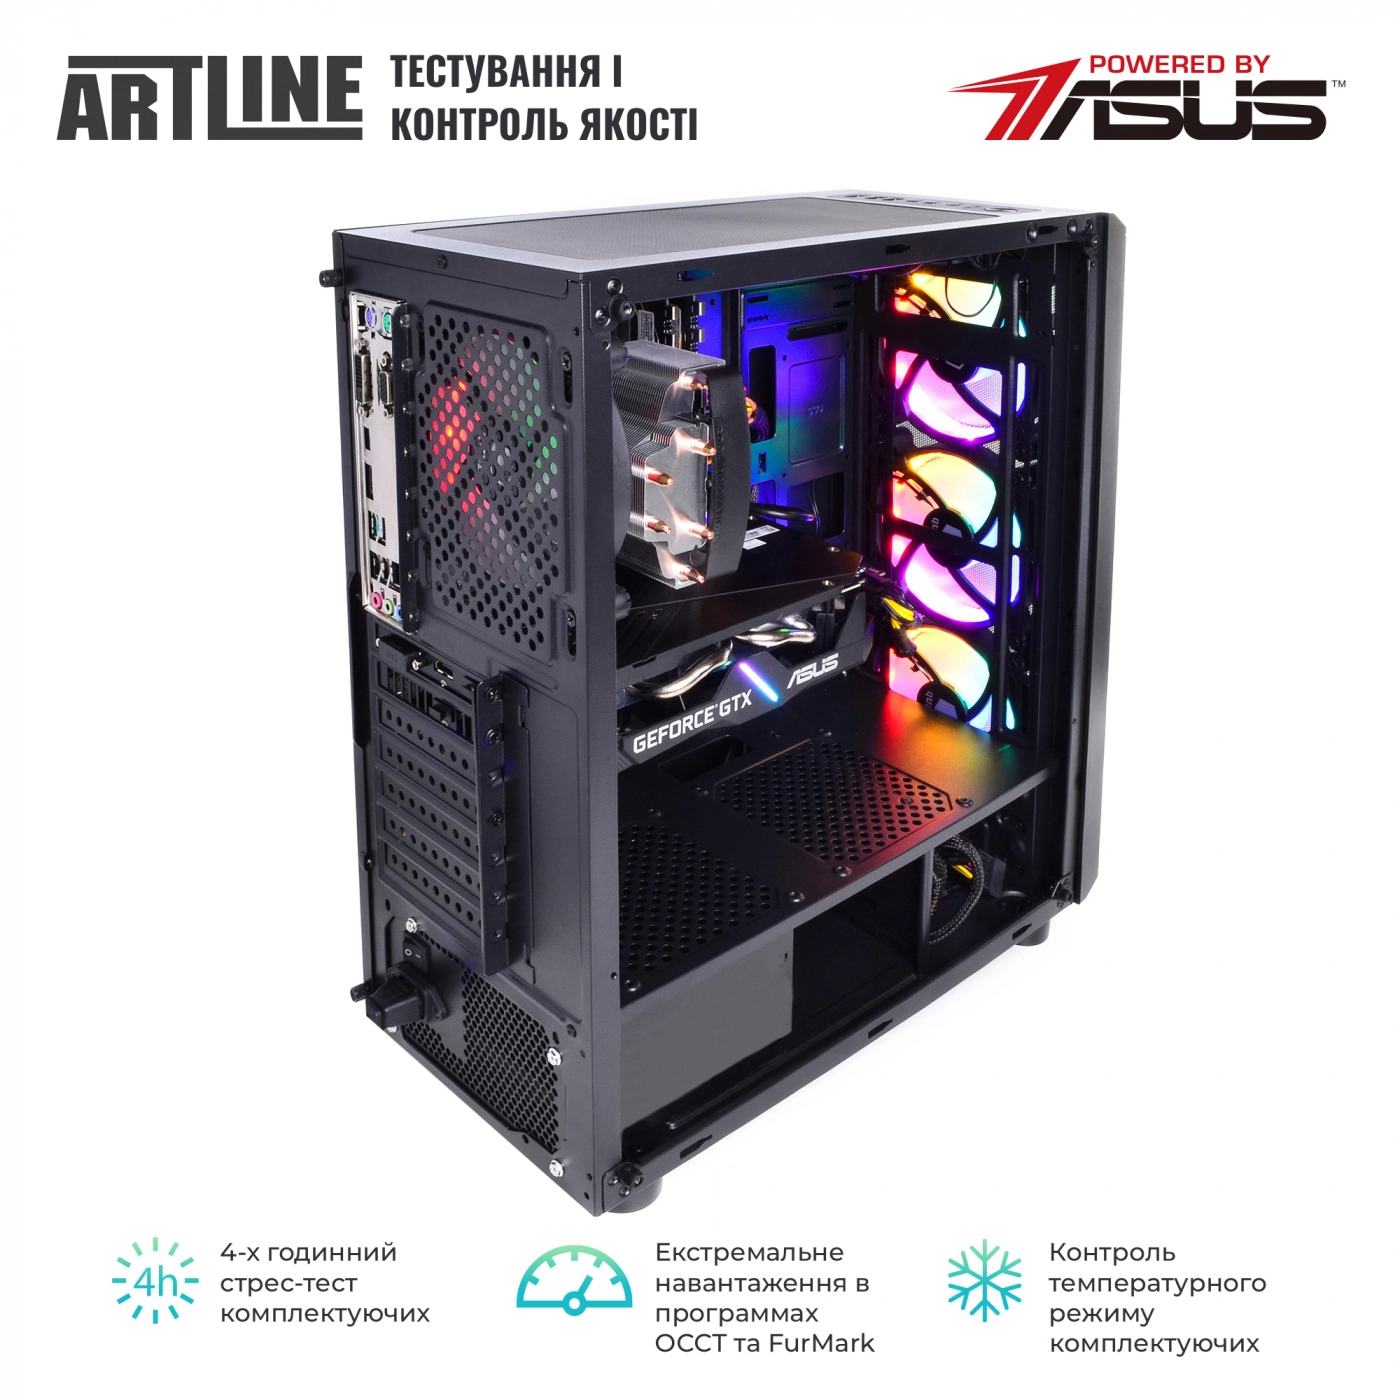 Купить Компьютер ARTLINE Gaming X39v54 - фото 7